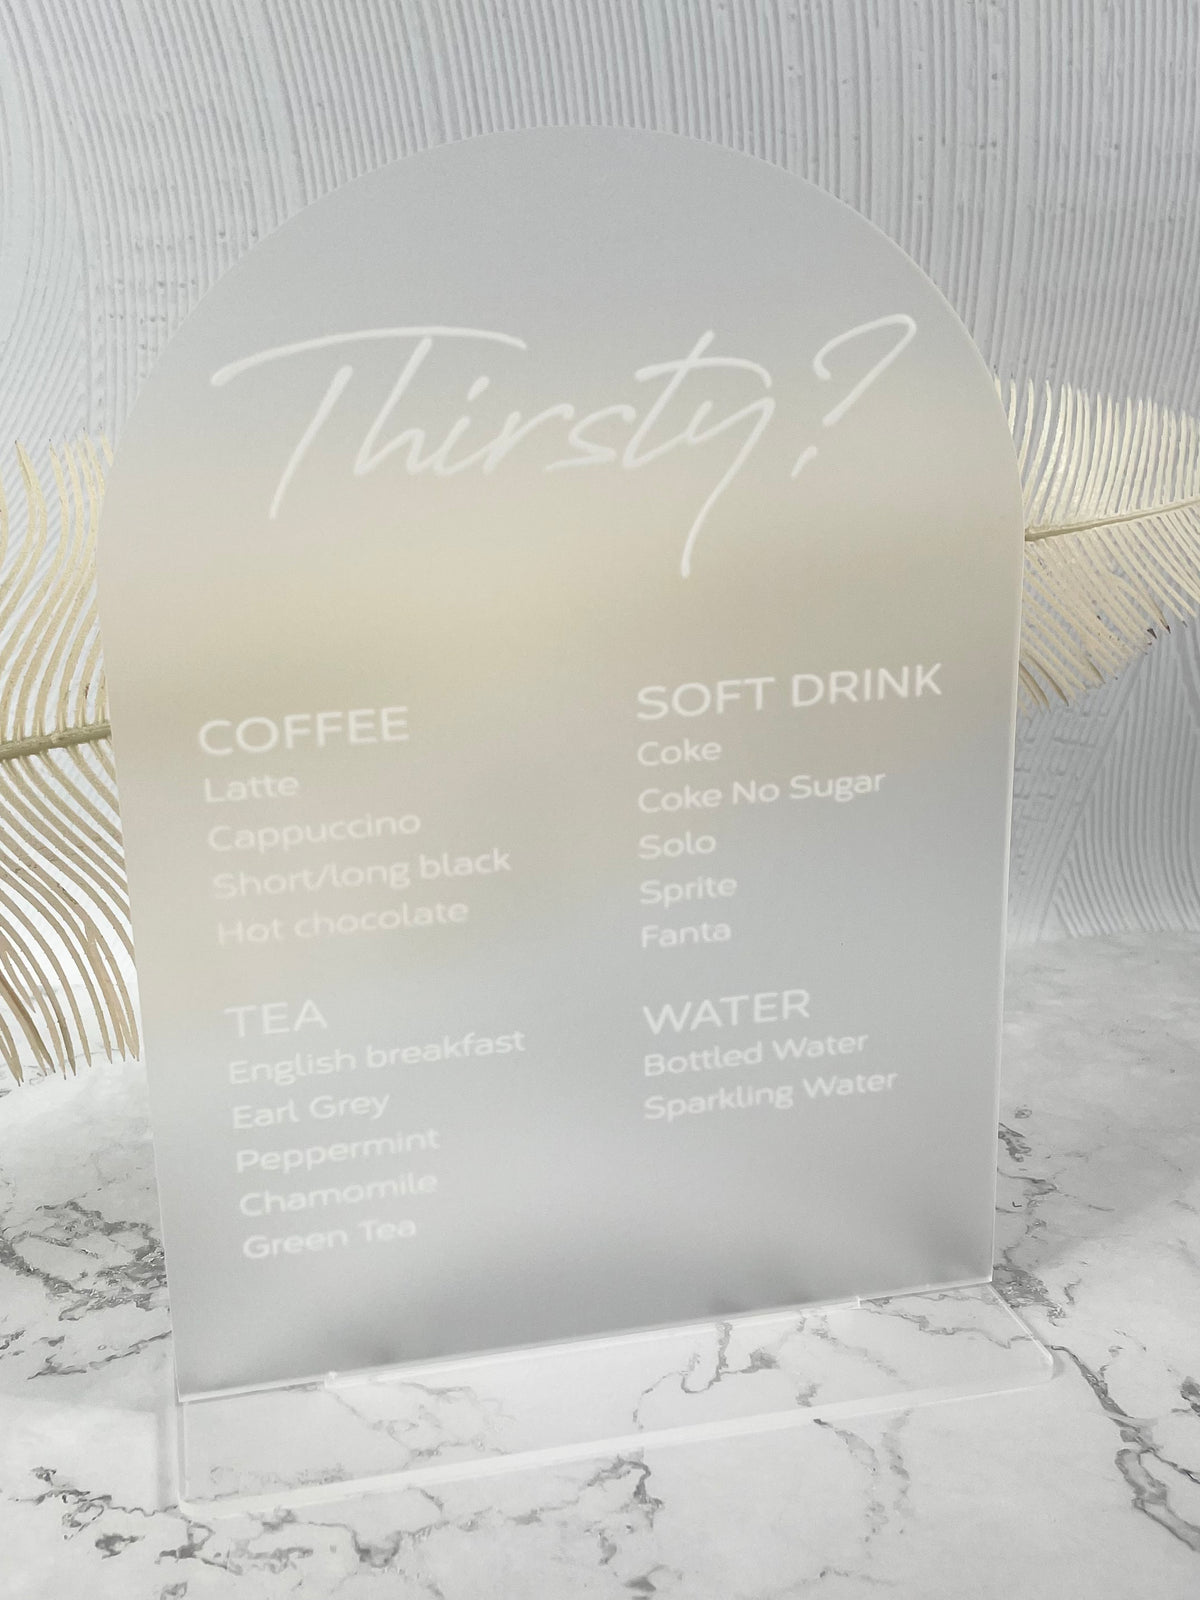 custom drink menu